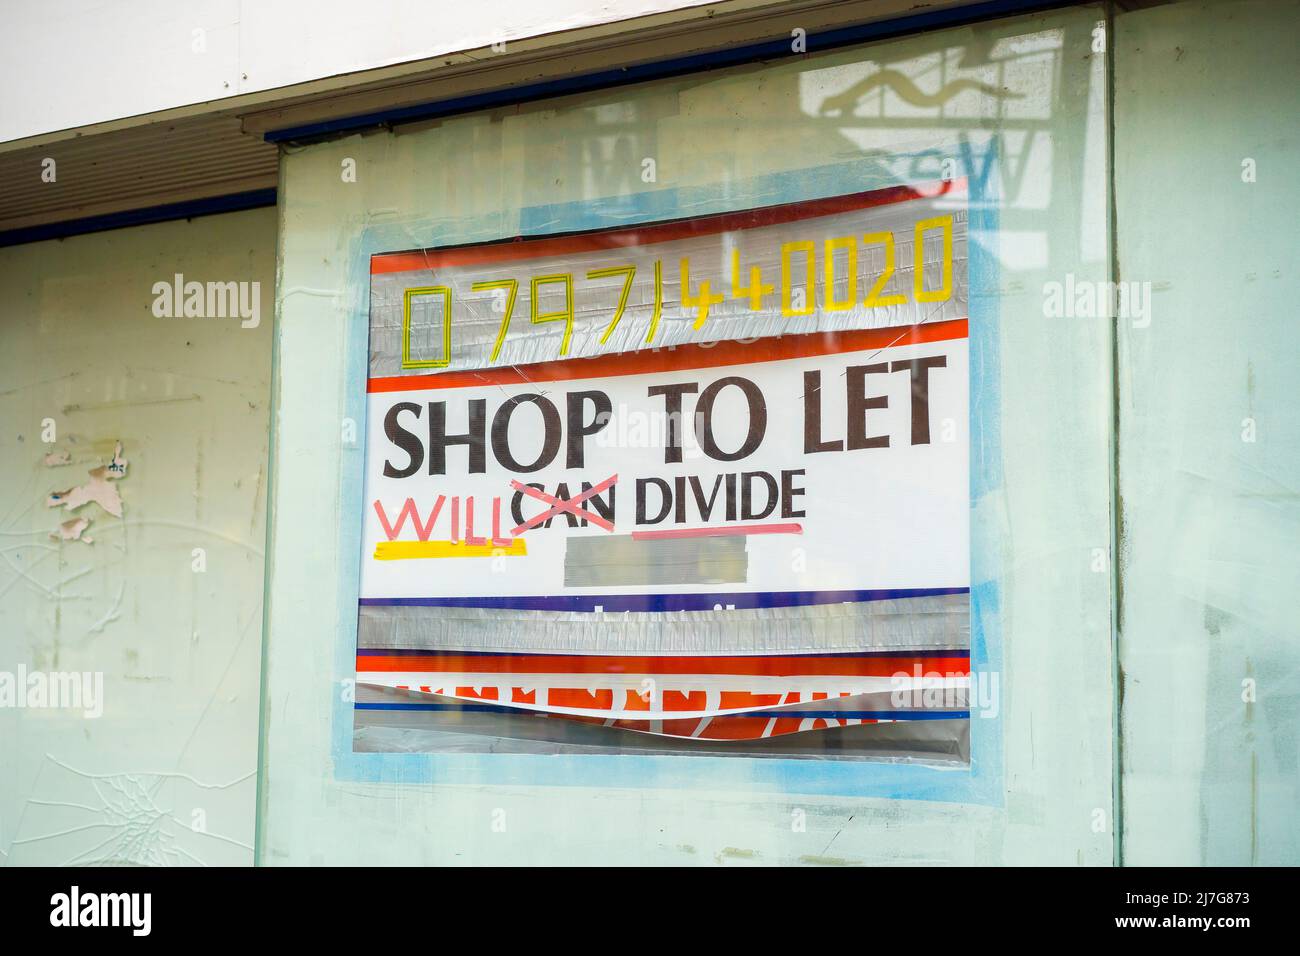 Shop to Let signe dans le centre ville boutique fenêtre montrant le désespoir des propriétaires: Peut diviser, va diviser - mesures désespérées! Banque D'Images